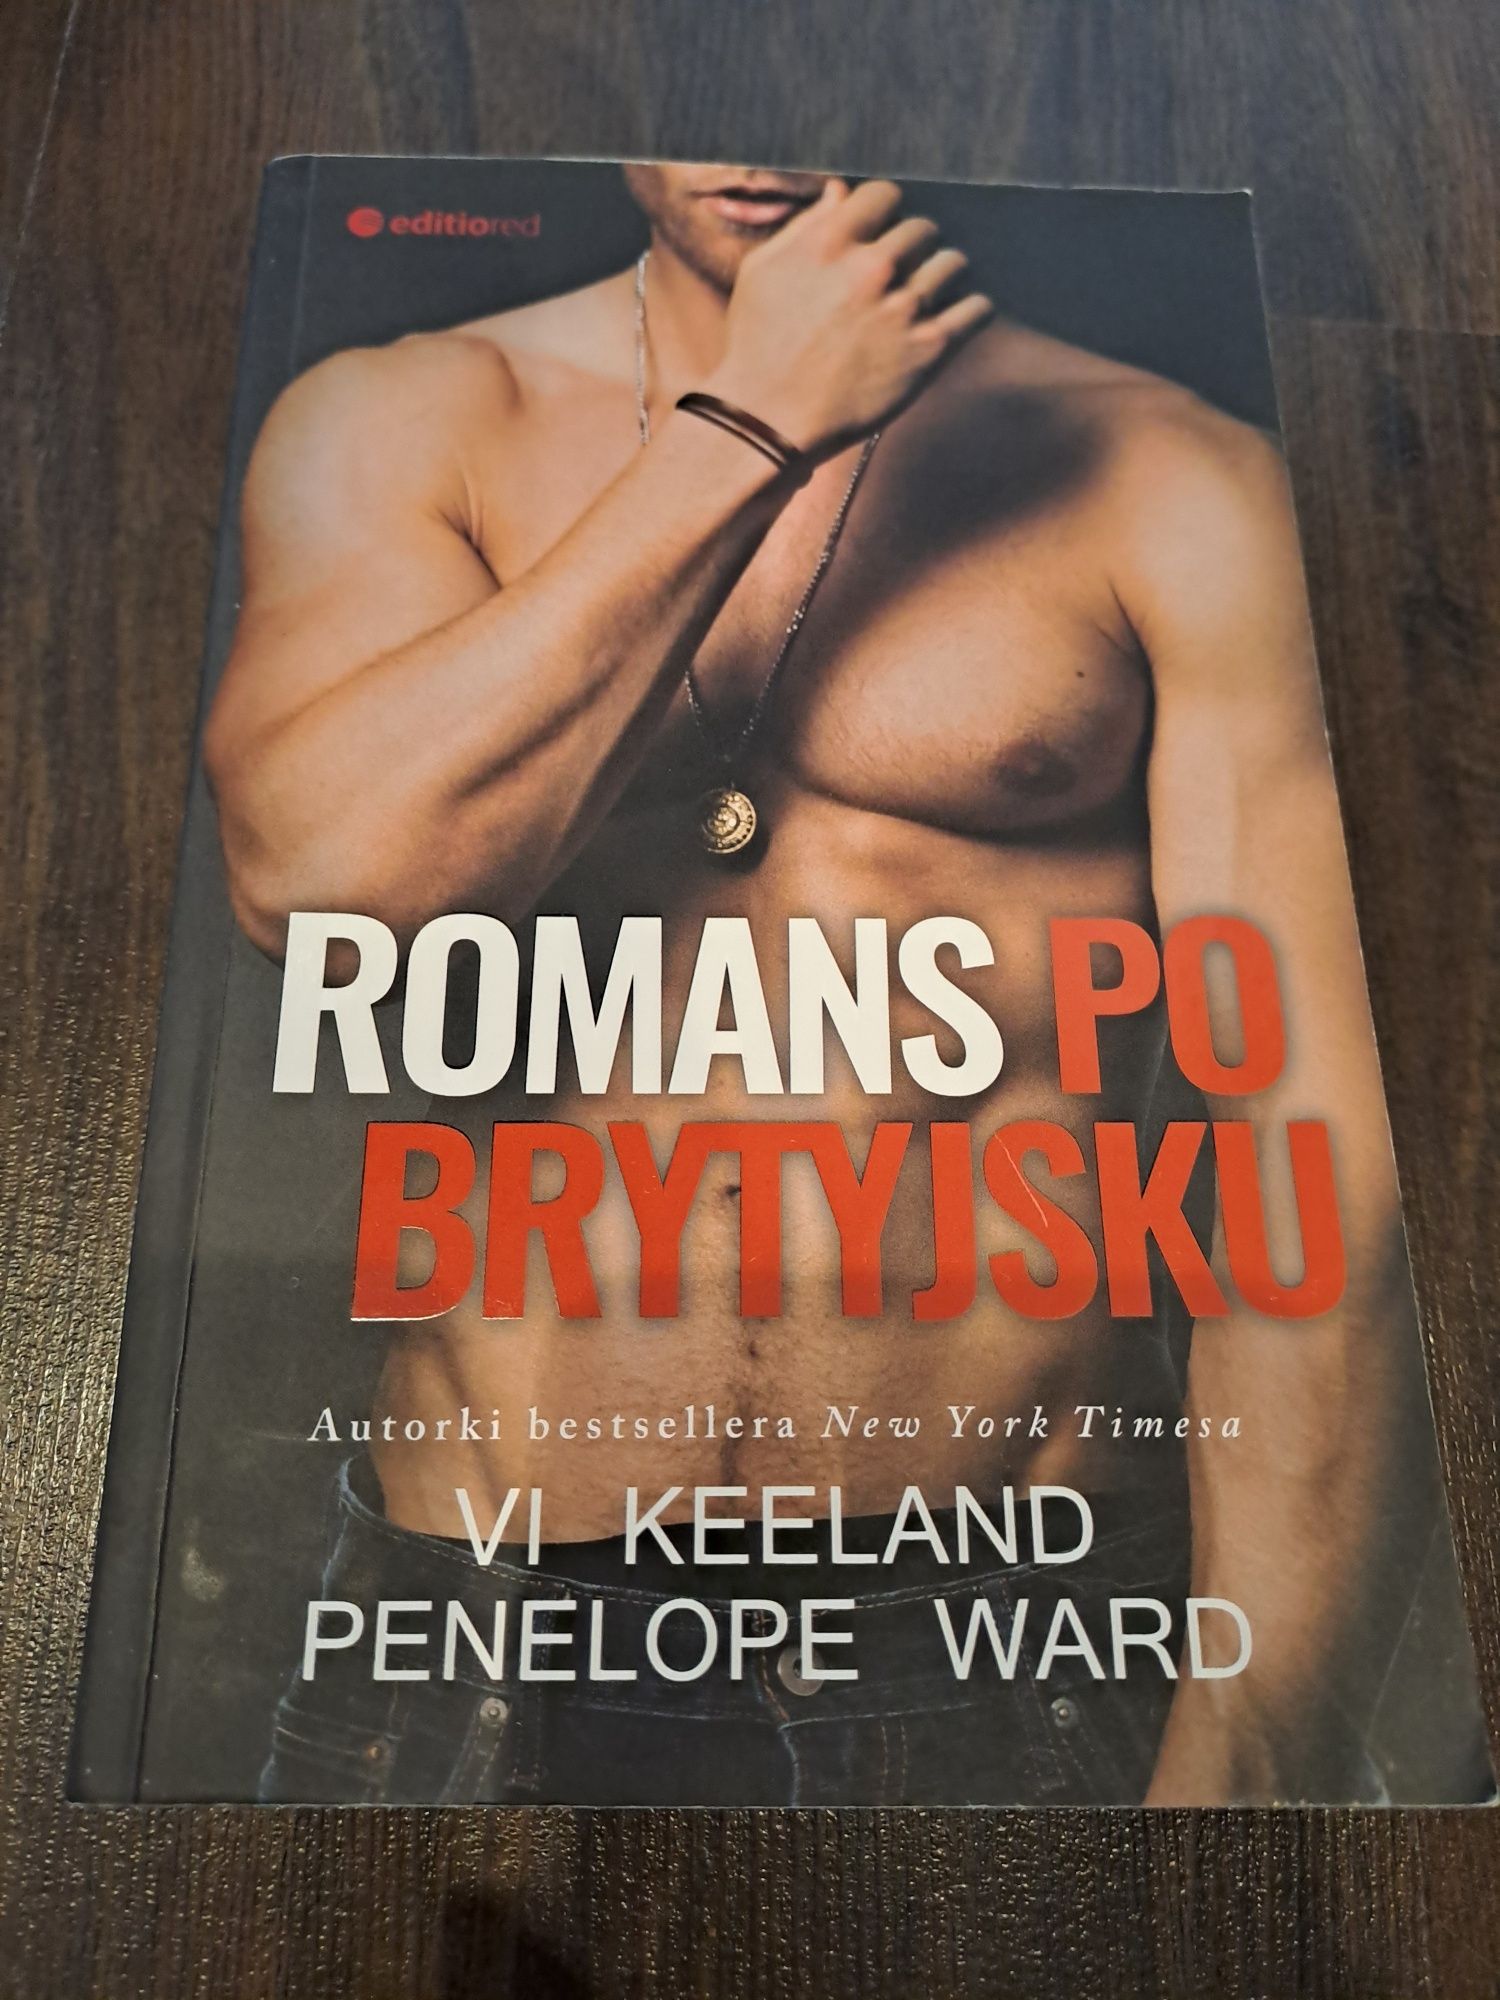 Romans po brytyjsku (Vi Keeland, Penelope Ward)